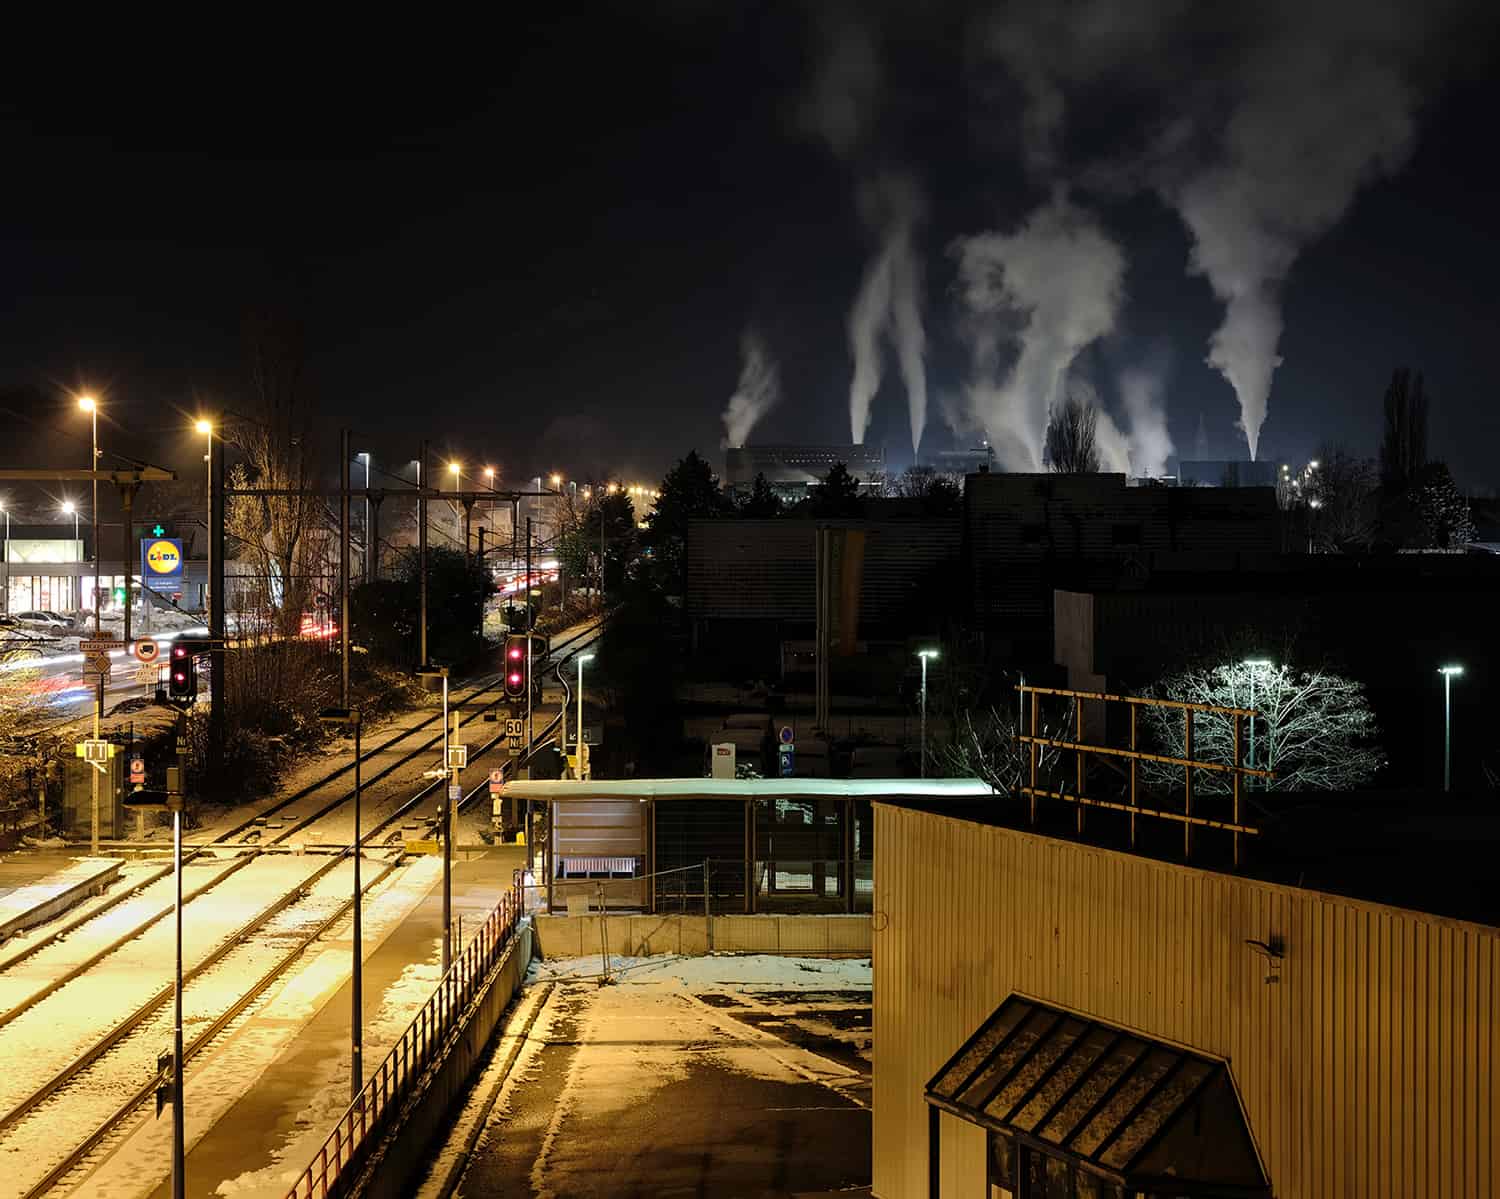 photographie d'une zone industrielle en hiver avec de la fumée se dégageant des usines © francois nussbaumer